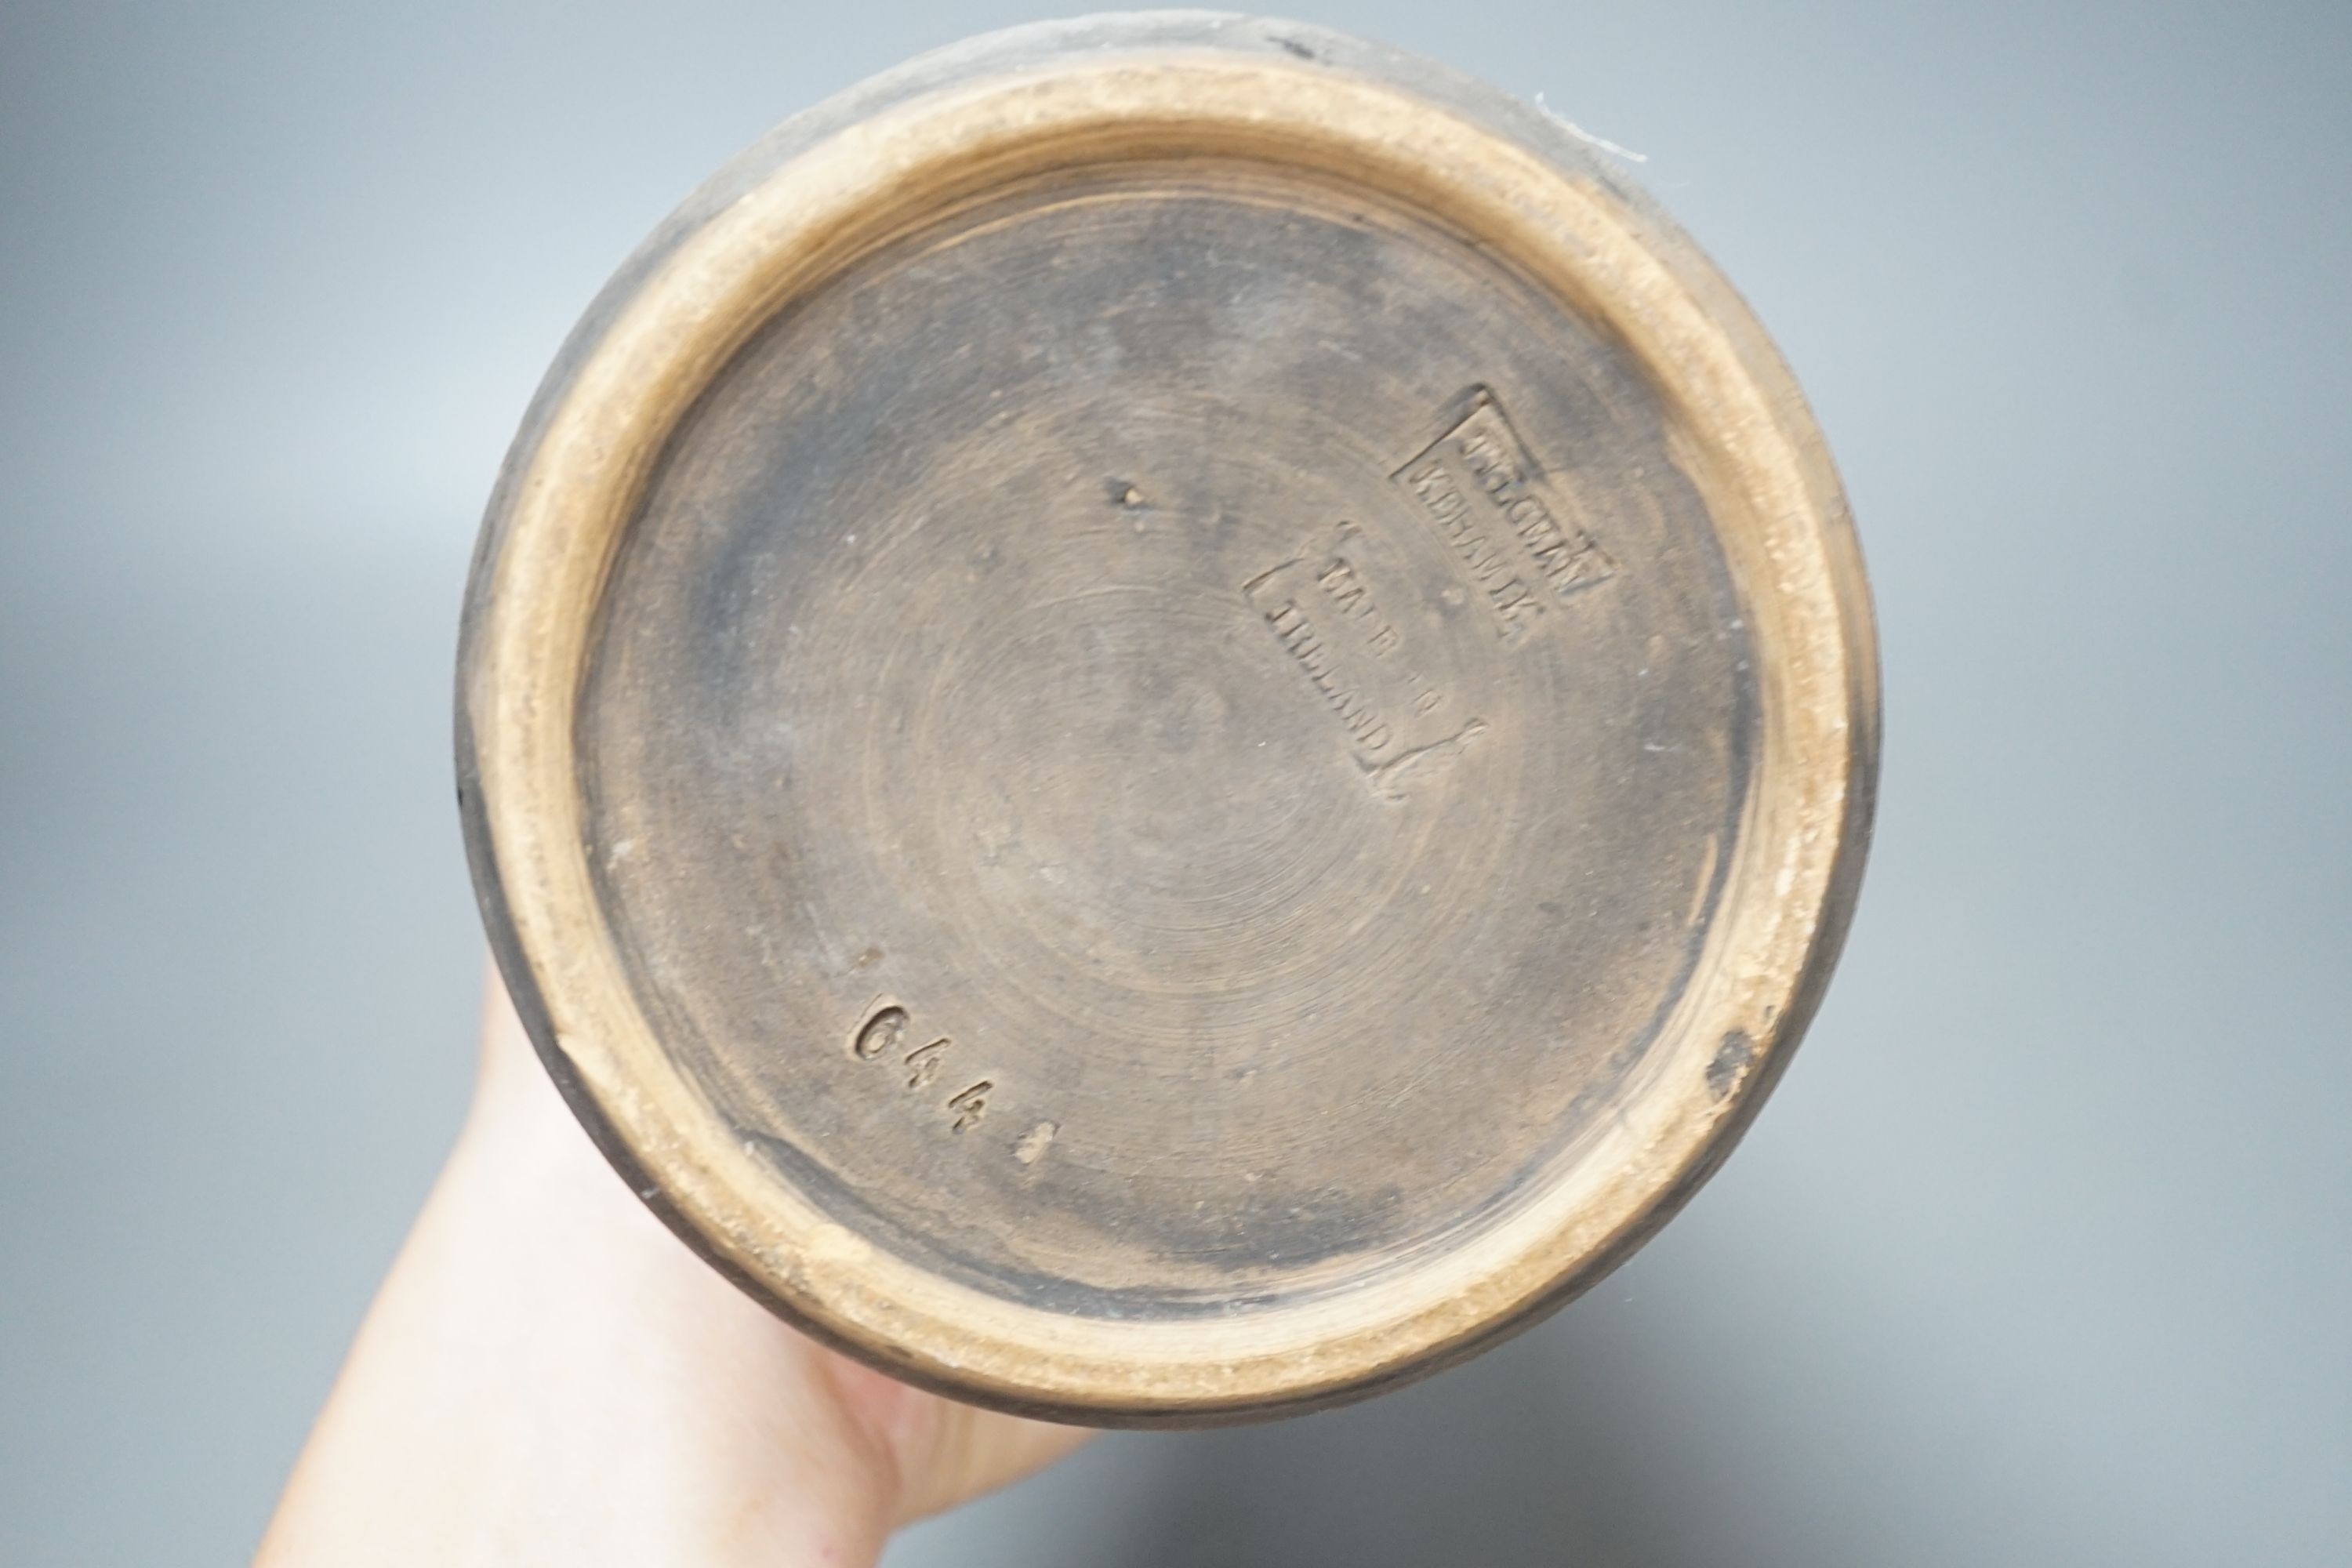 A Tilgman Keramik Irish pottery vase - 28.5cm tall